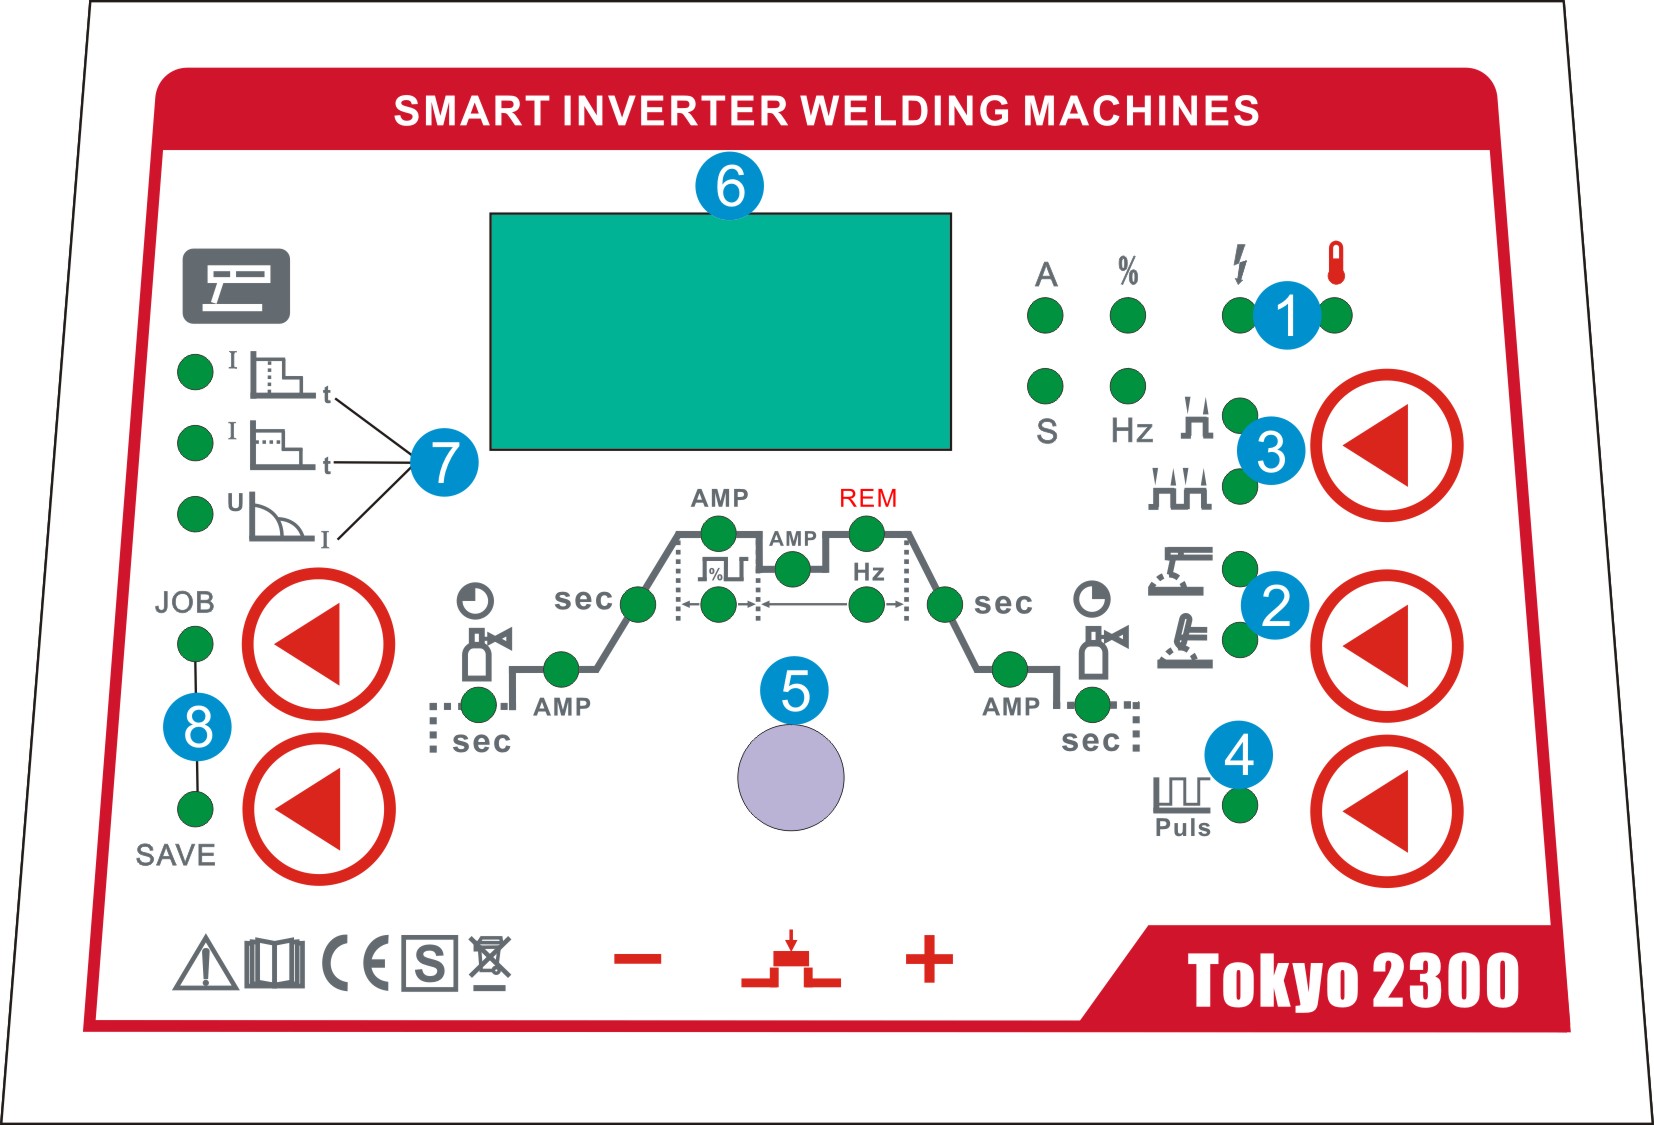 pannello di controllo tokyo 2300 vector welding